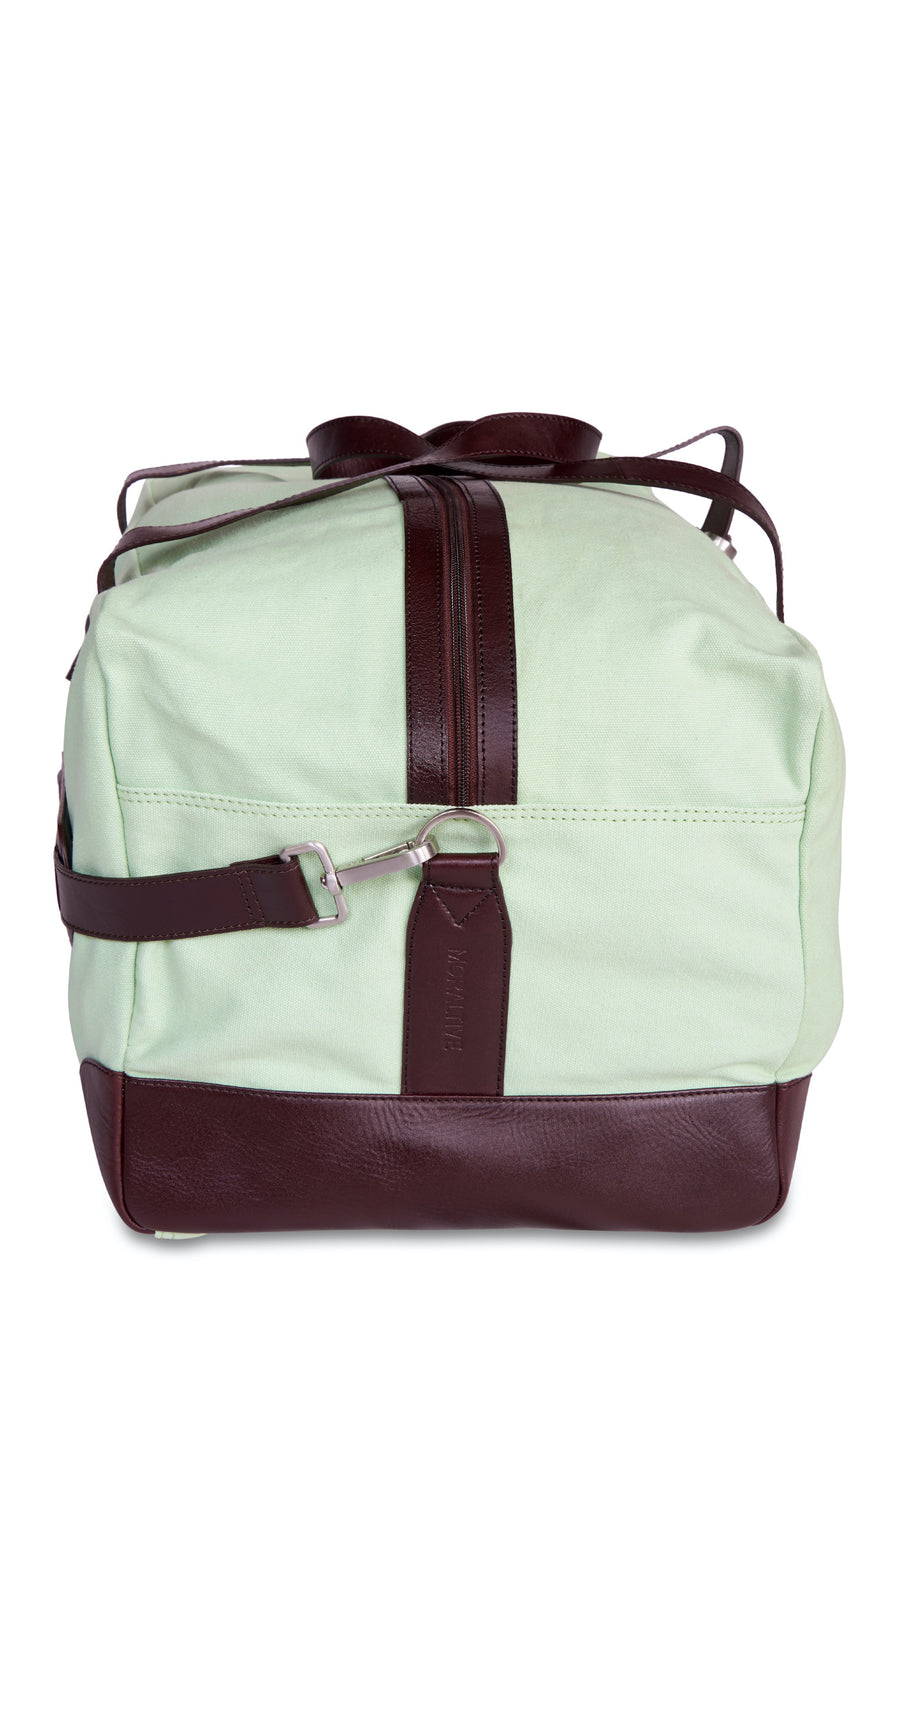 Moraltive Weekender Bags - Mint Green & Brown